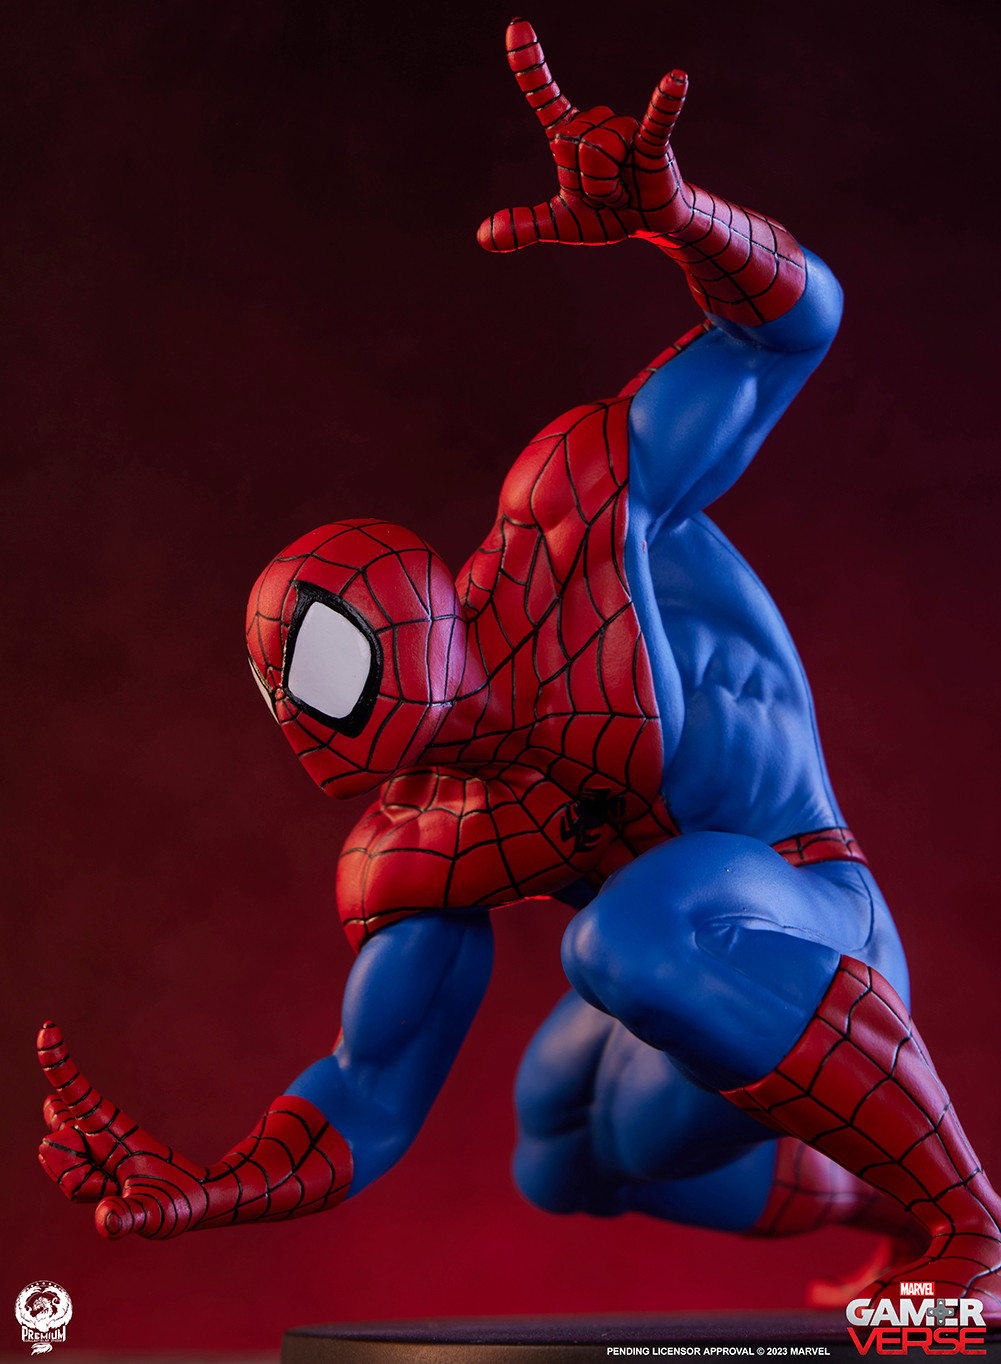 Figurine Support Marvel Spider-Man